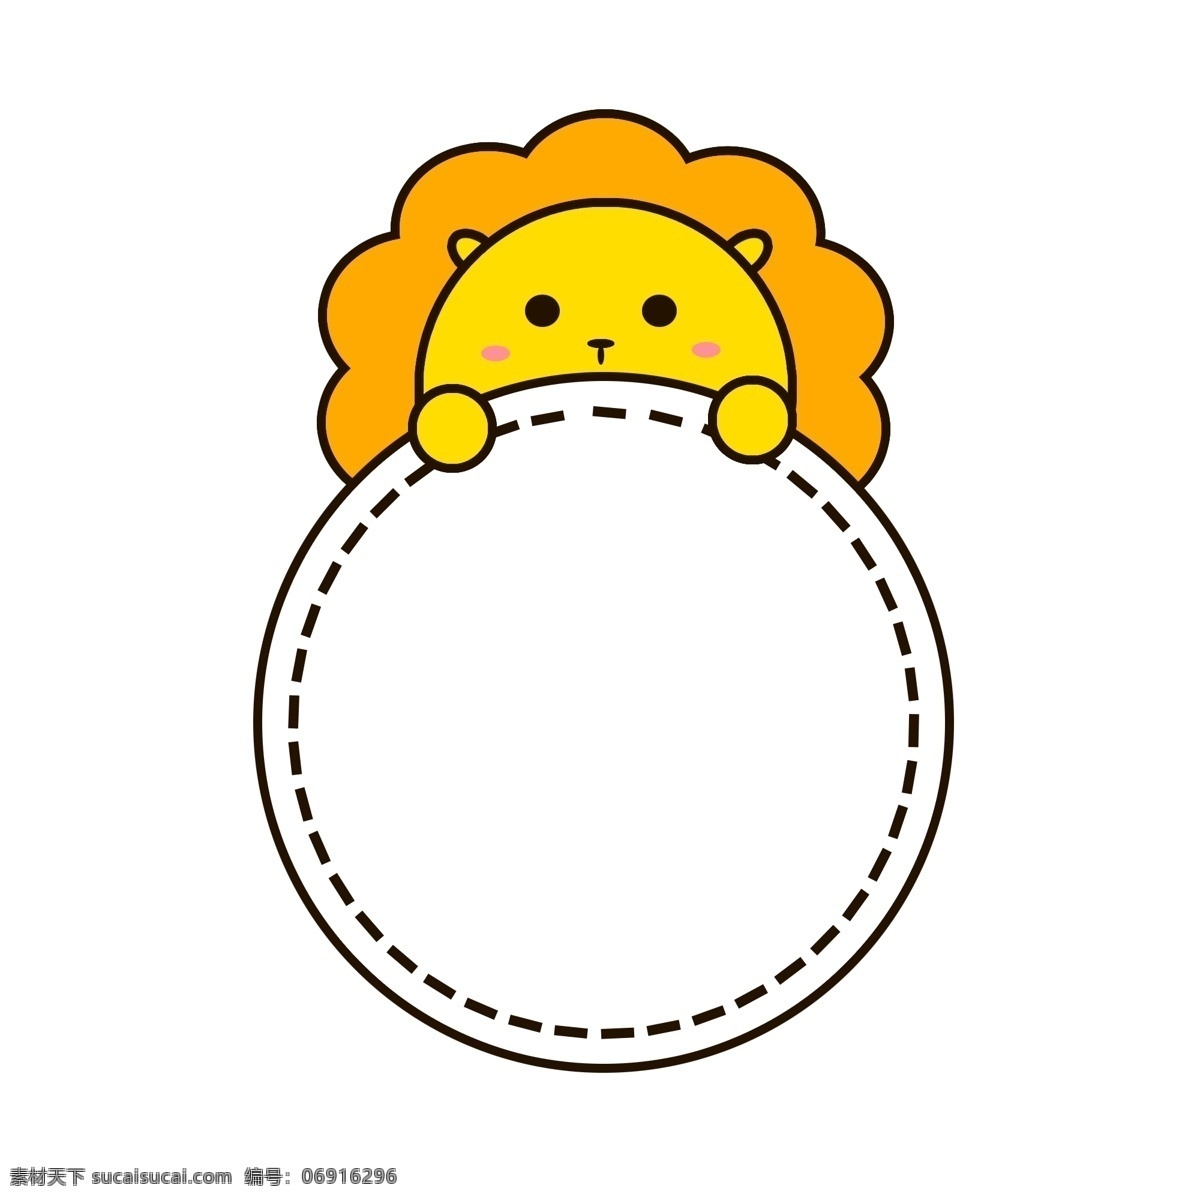 卡通 可爱 小 狮子 动物 边框 矢量 圆形 黄色 元素